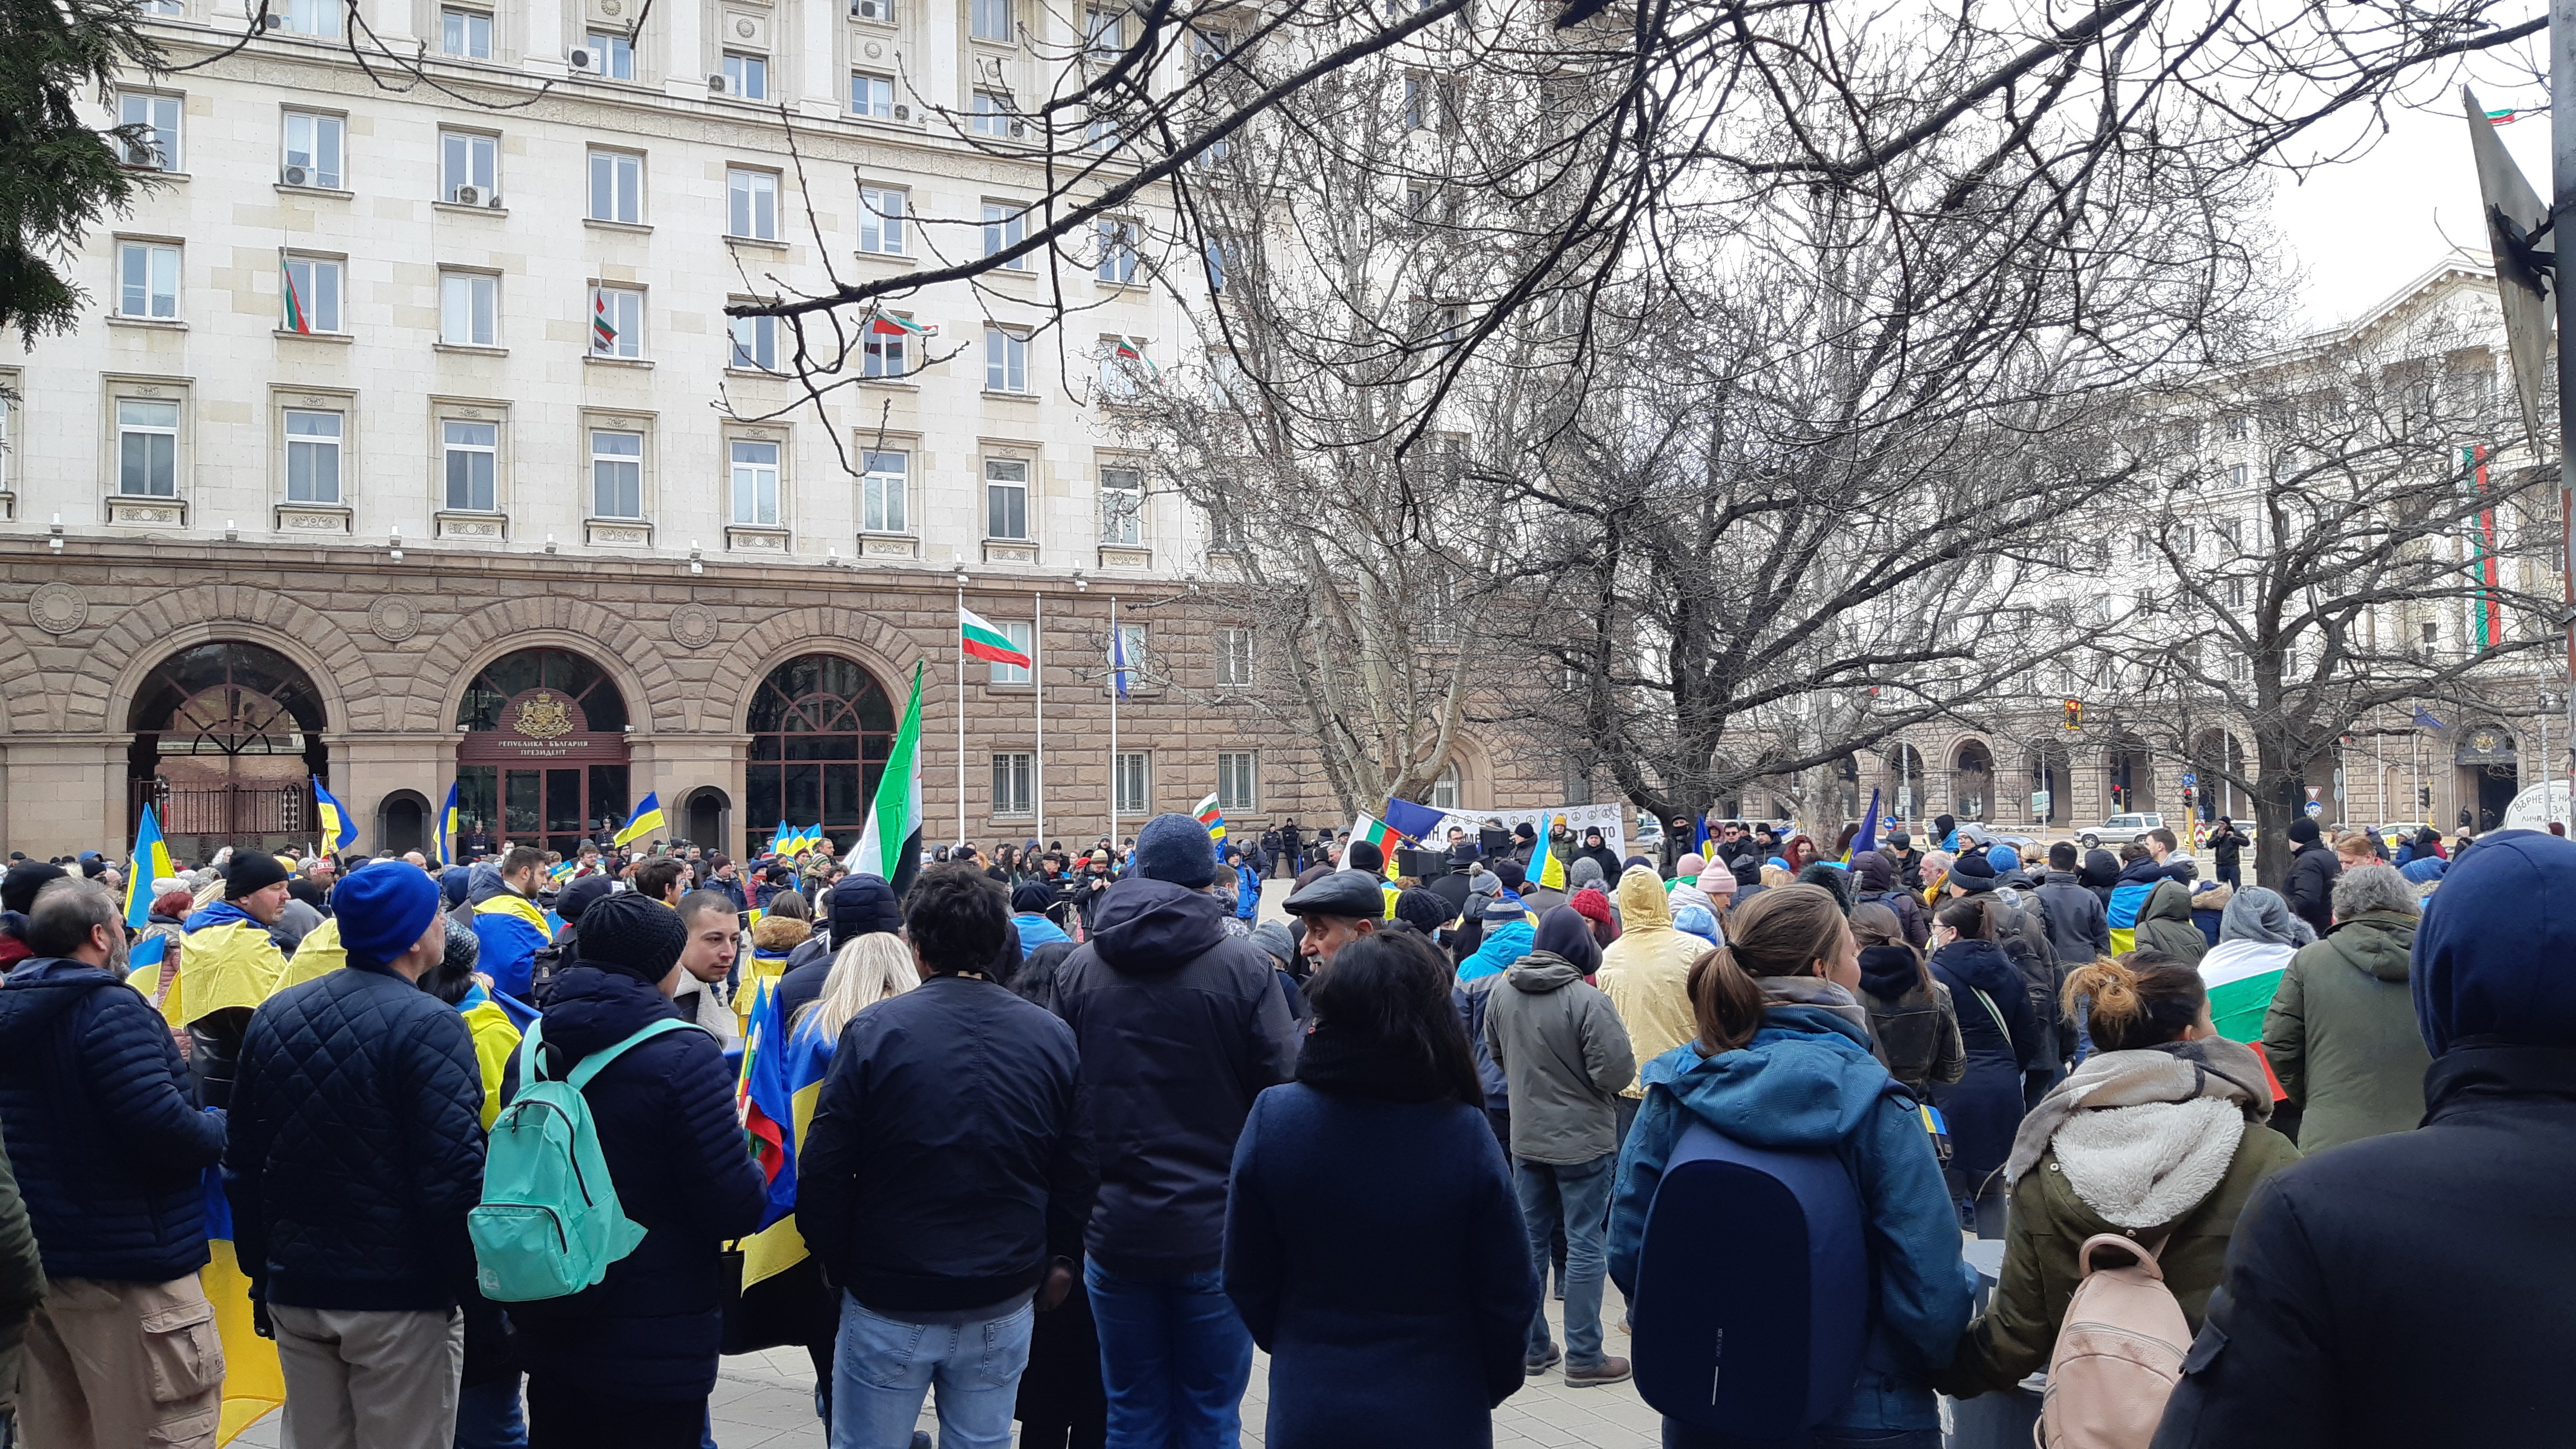 Българи и украинци излязоха на протест срещу войната в Украйна.
В